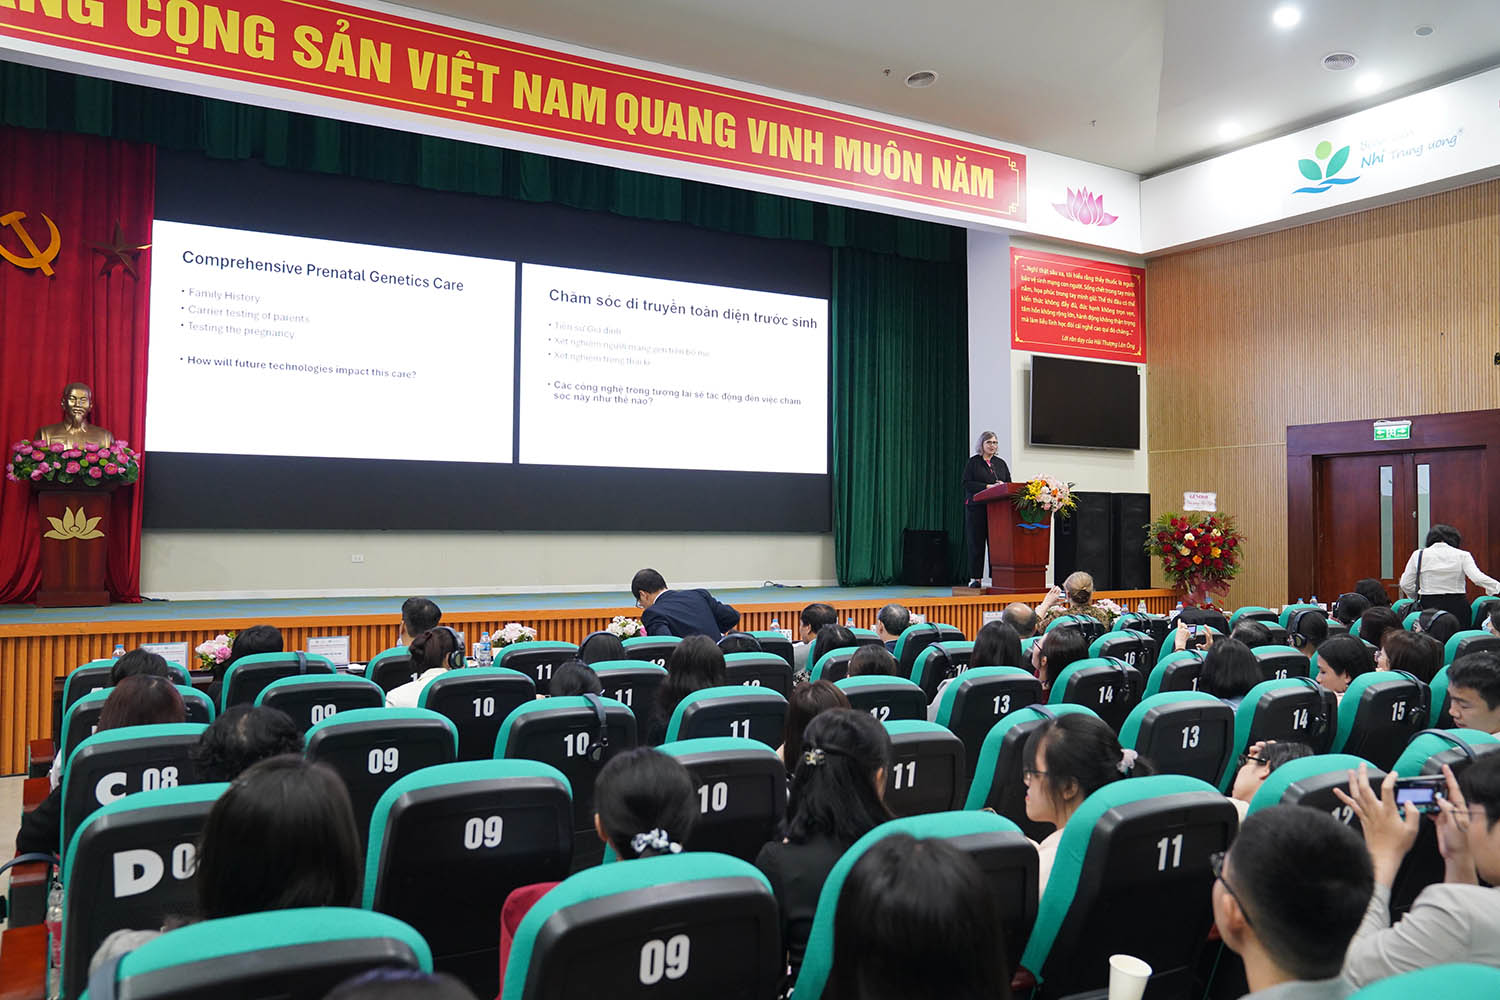 Lepping speaking in Vietnam